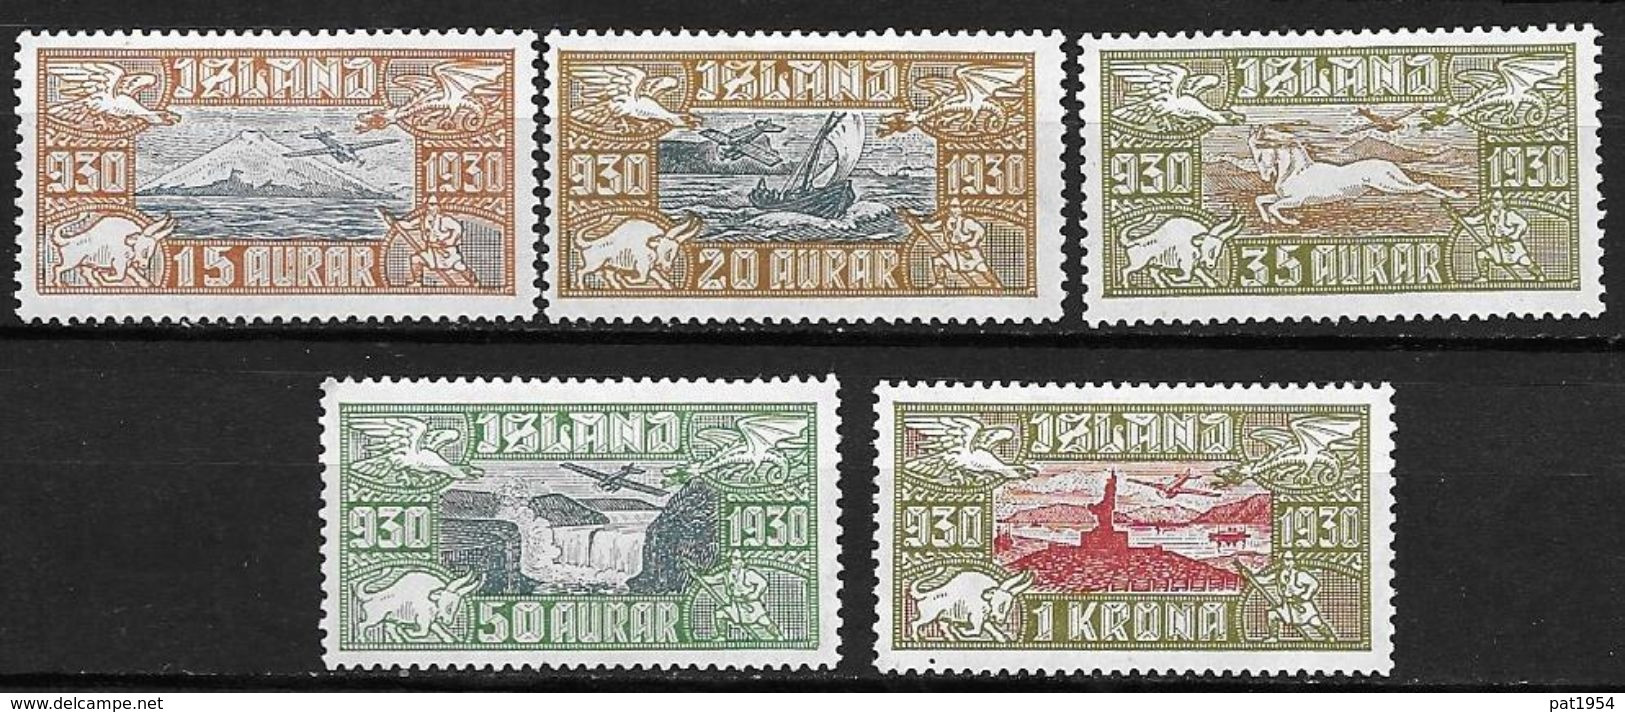 Islande 1930 Poste Aérienne N° 4/8  Neufs * MLH, Cote 235 Euros - Luftpost